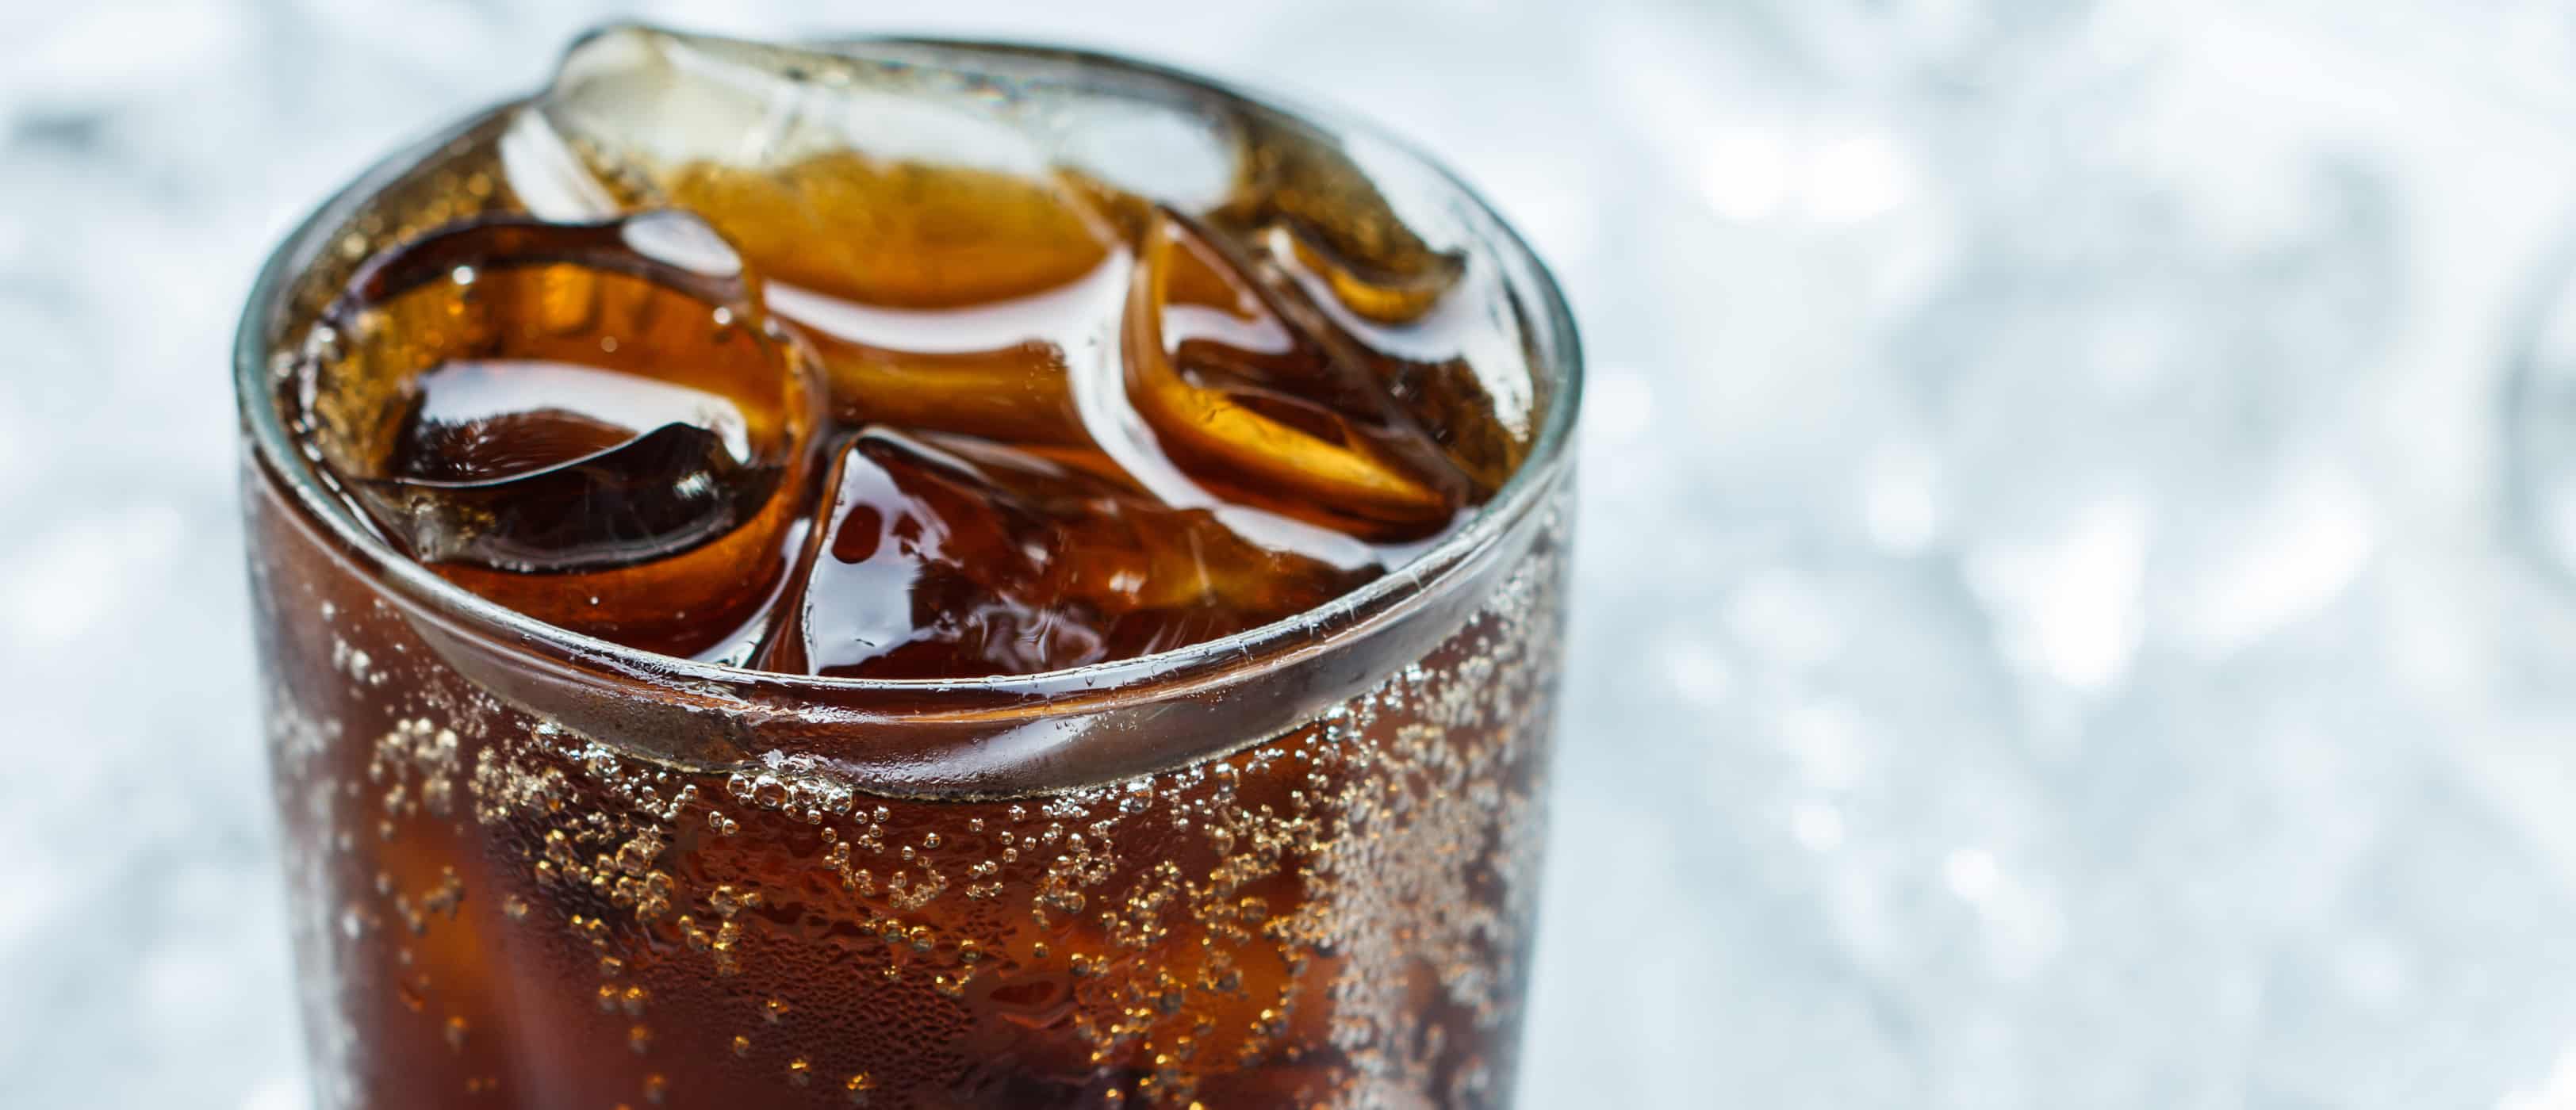 myten om faren for kunstig søtningsmiddel aspartam